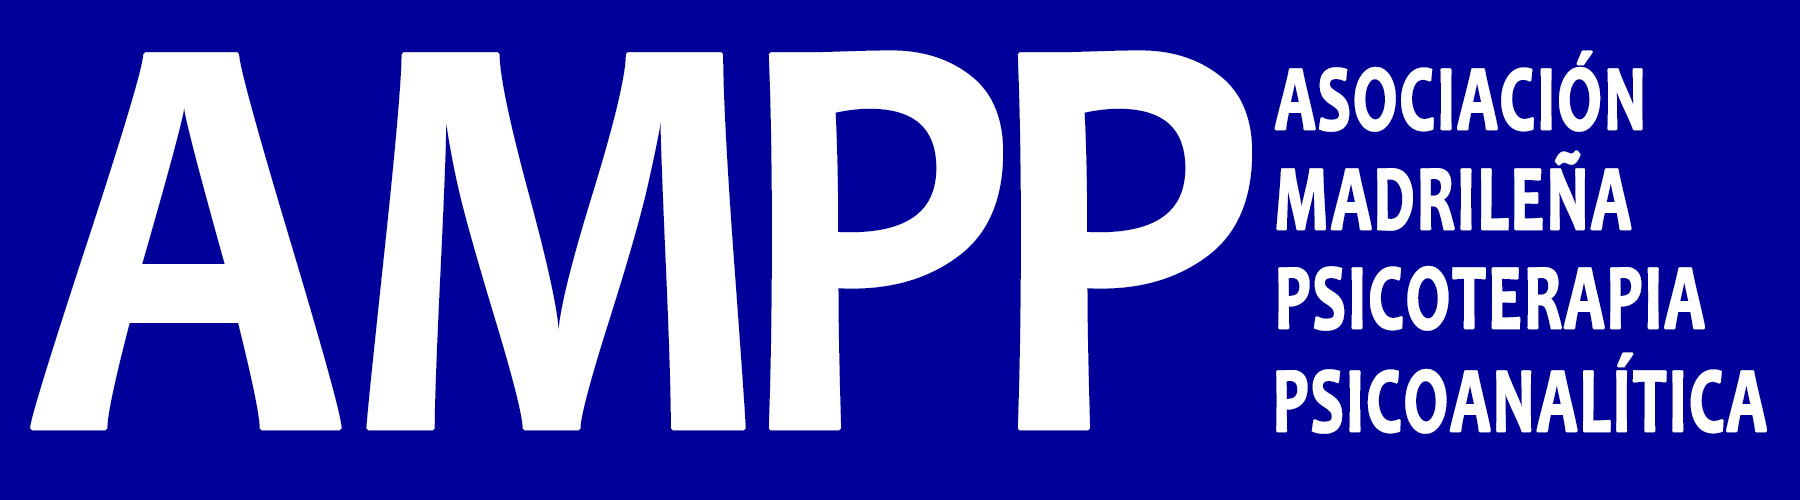 Asociación Madrileña de Psicoterapia Psicoanalítica (AMPP)